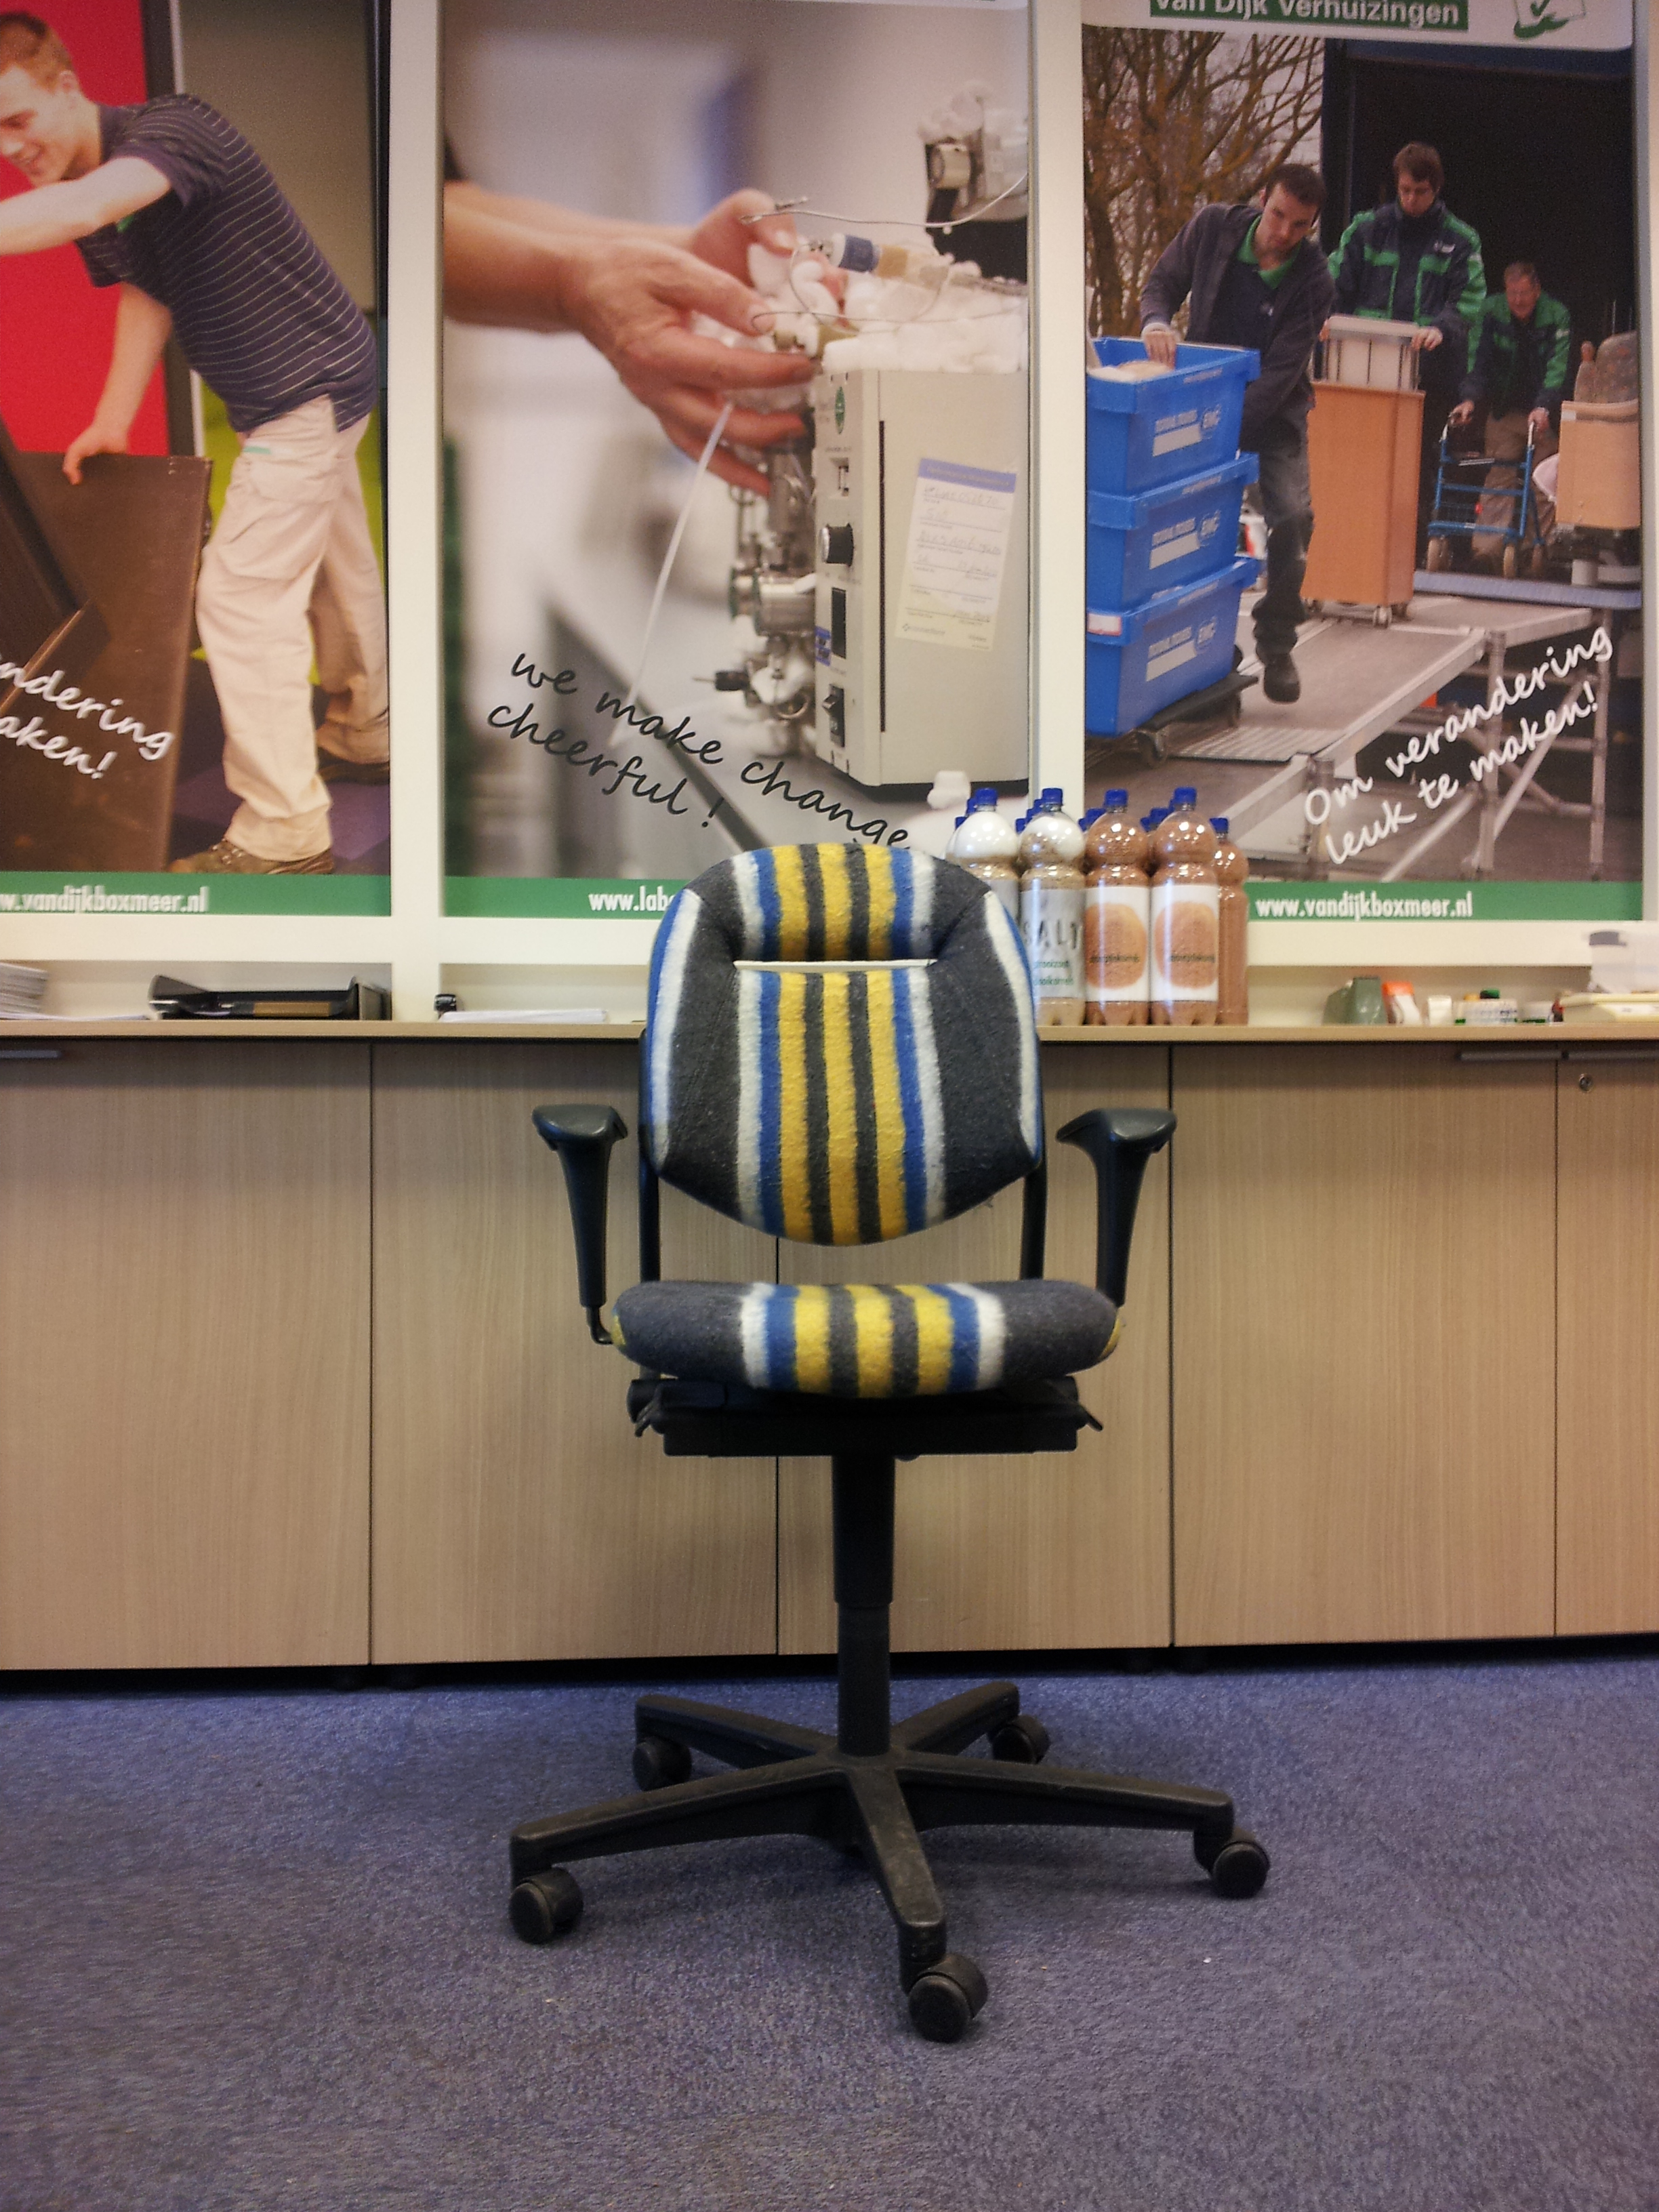 Mondial Van Dijk Verhuizingen ook creatief met verhuismateriaal, Huisstijl beklede stoel